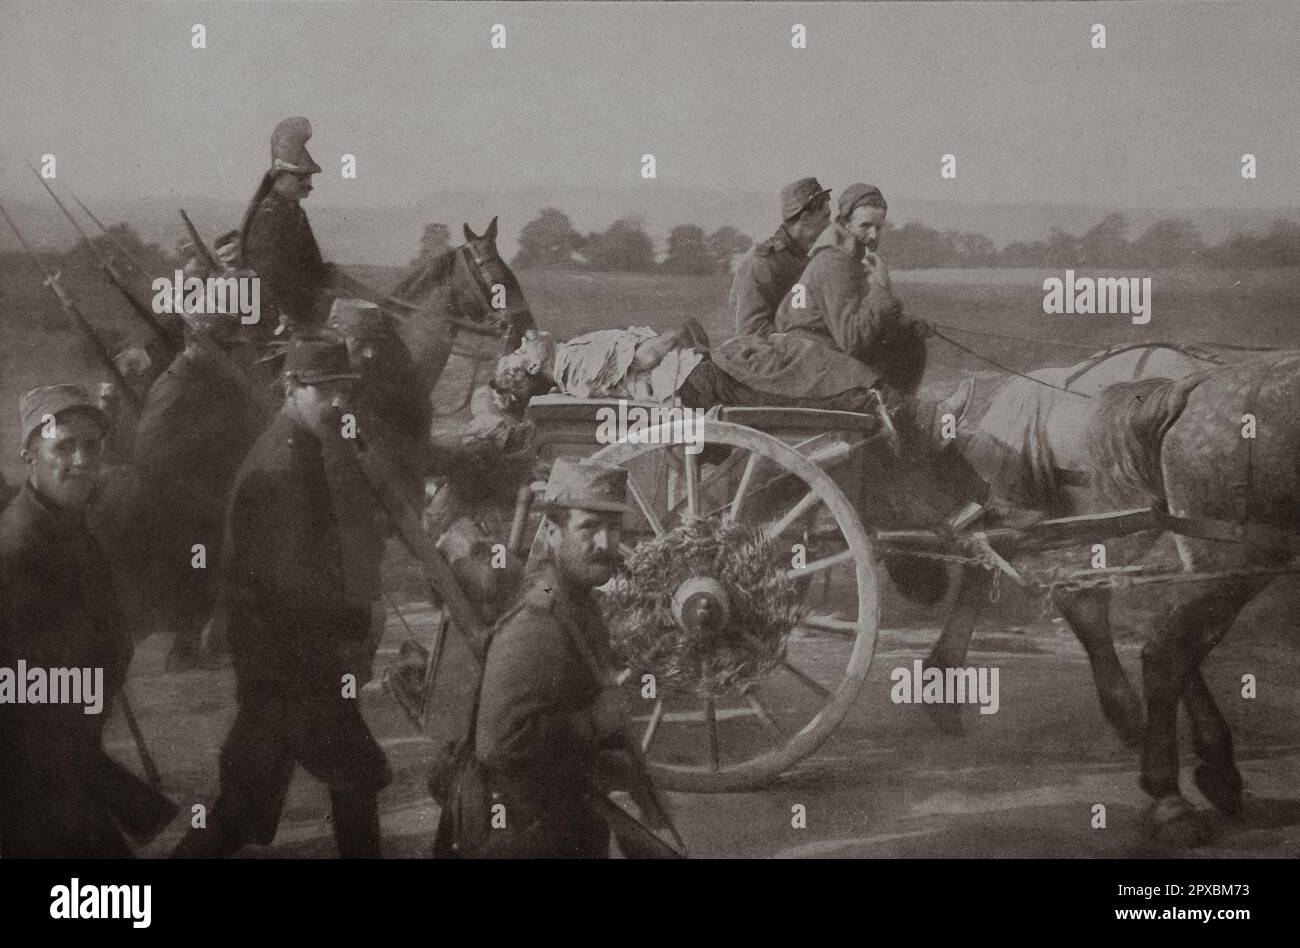 Première Guerre mondiale La France en guerre. Les soldats français portent le corps d'un soldat allemand assassiné sur une charrette, l'un de ceux qui voulaient conquérir la France Banque D'Images